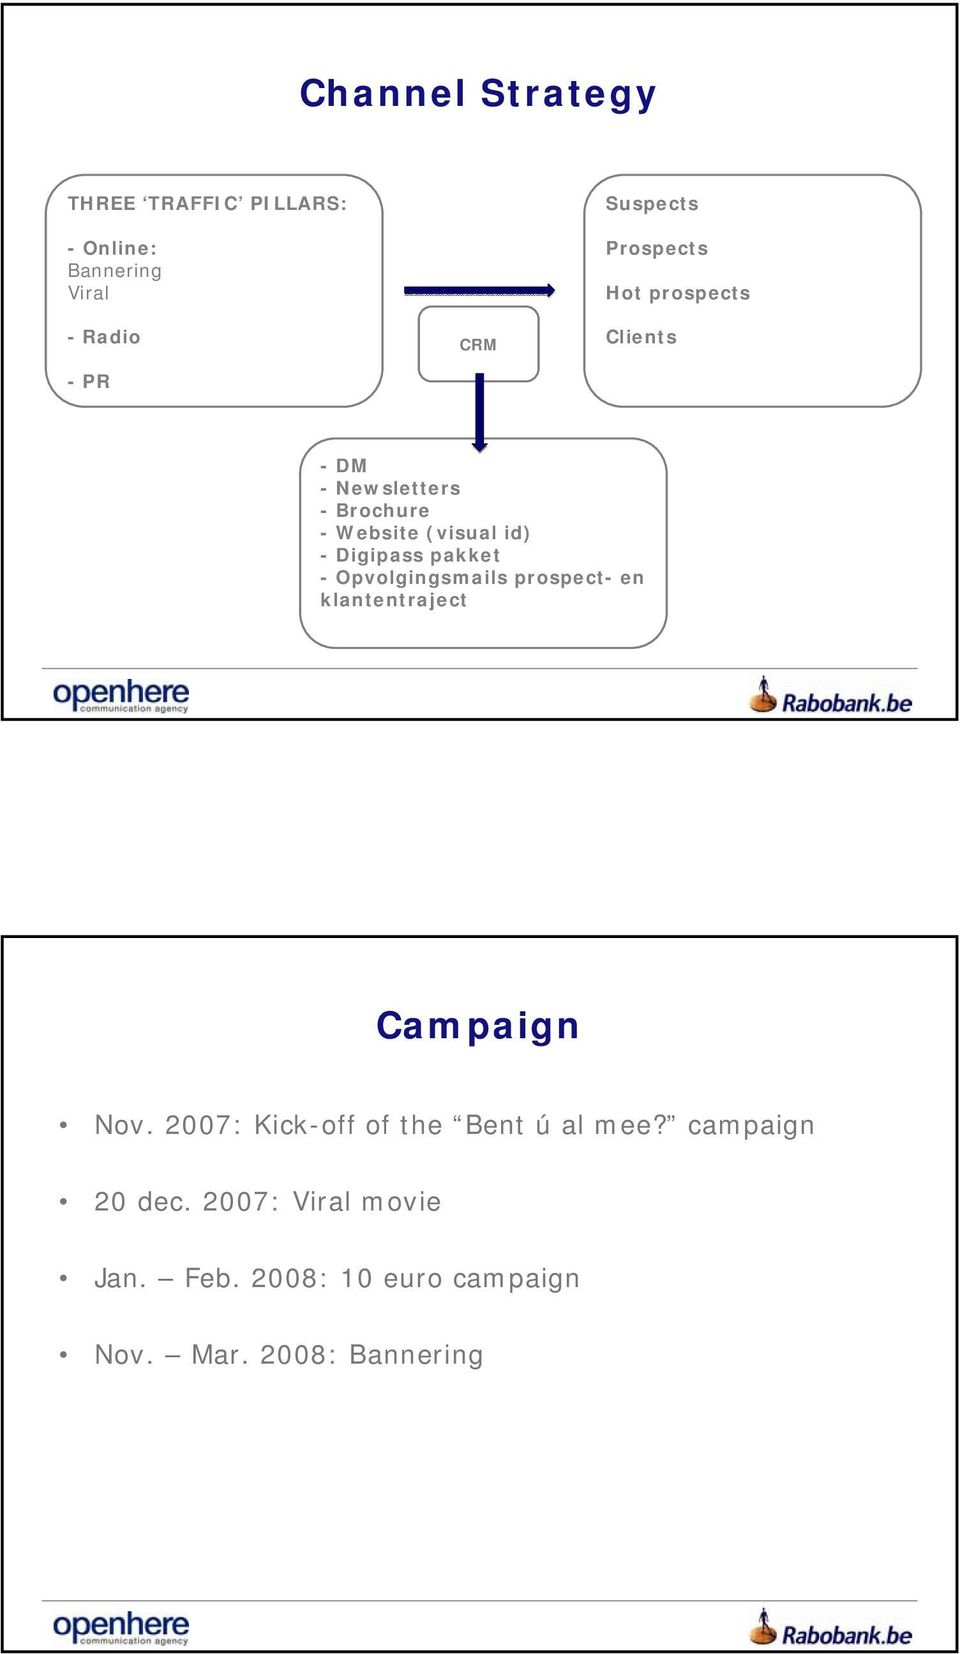 pakket - Opvolgingsmails prospect- en klantentraject Campaign Nov.